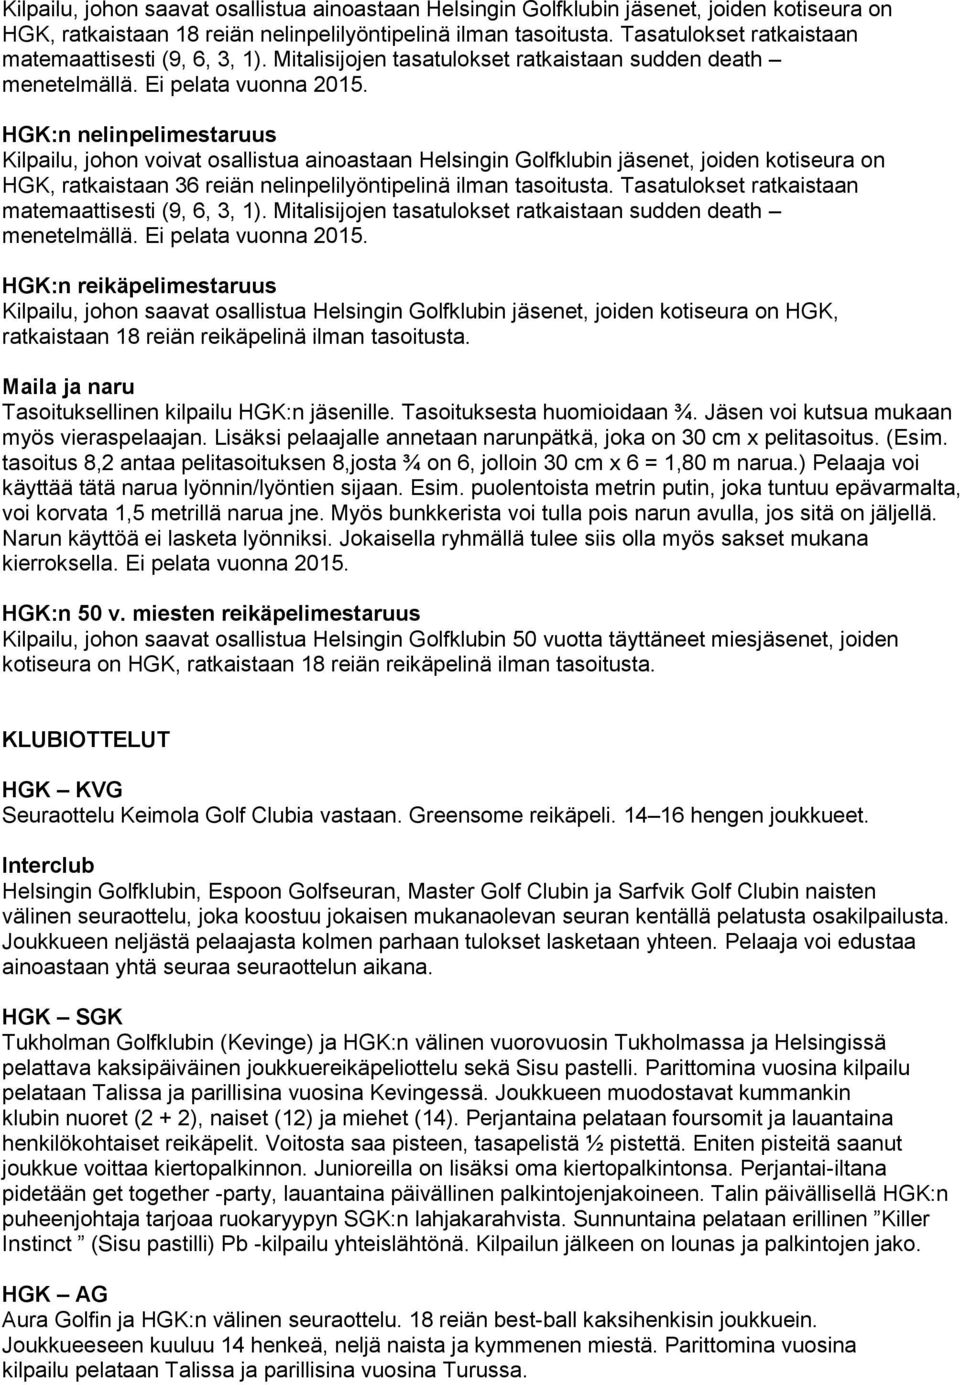 HGK:n nelinpelimestaruus Kilpailu, johon voivat osallistua ainoastaan Helsingin Golfklubin jäsenet, joiden kotiseura on HGK, ratkaistaan 36 reiän nelinpelilyöntipelinä ilman tasoitusta.